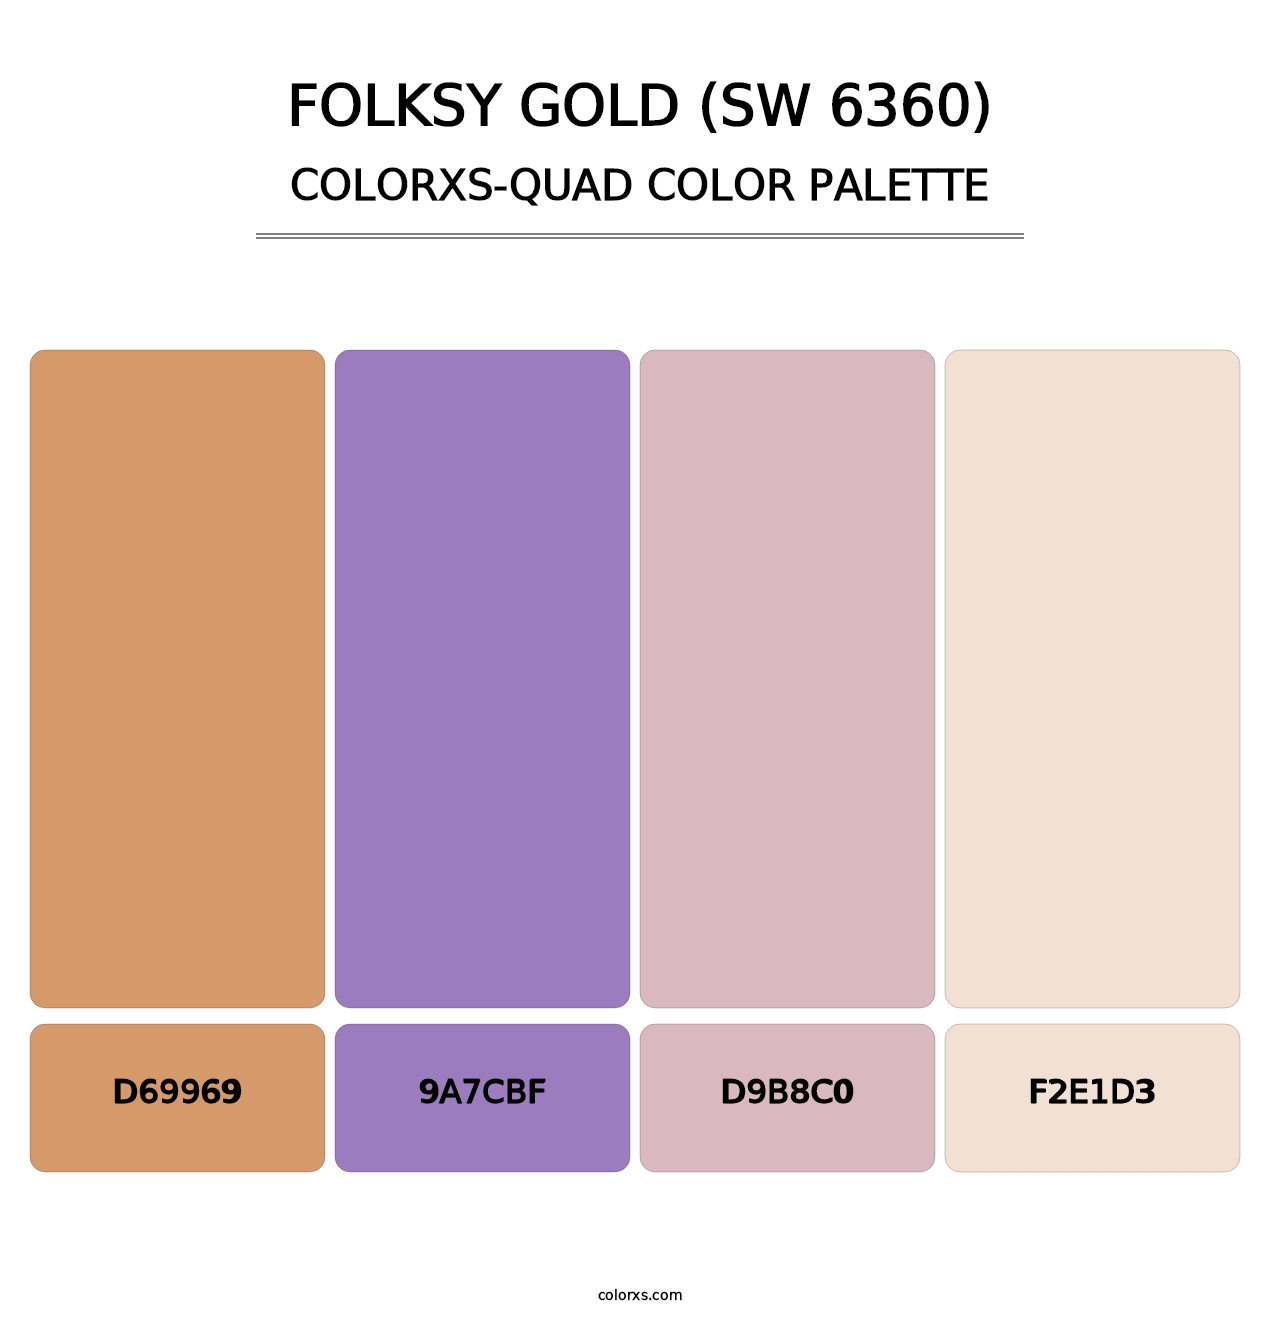 Folksy Gold (SW 6360) - Colorxs Quad Palette